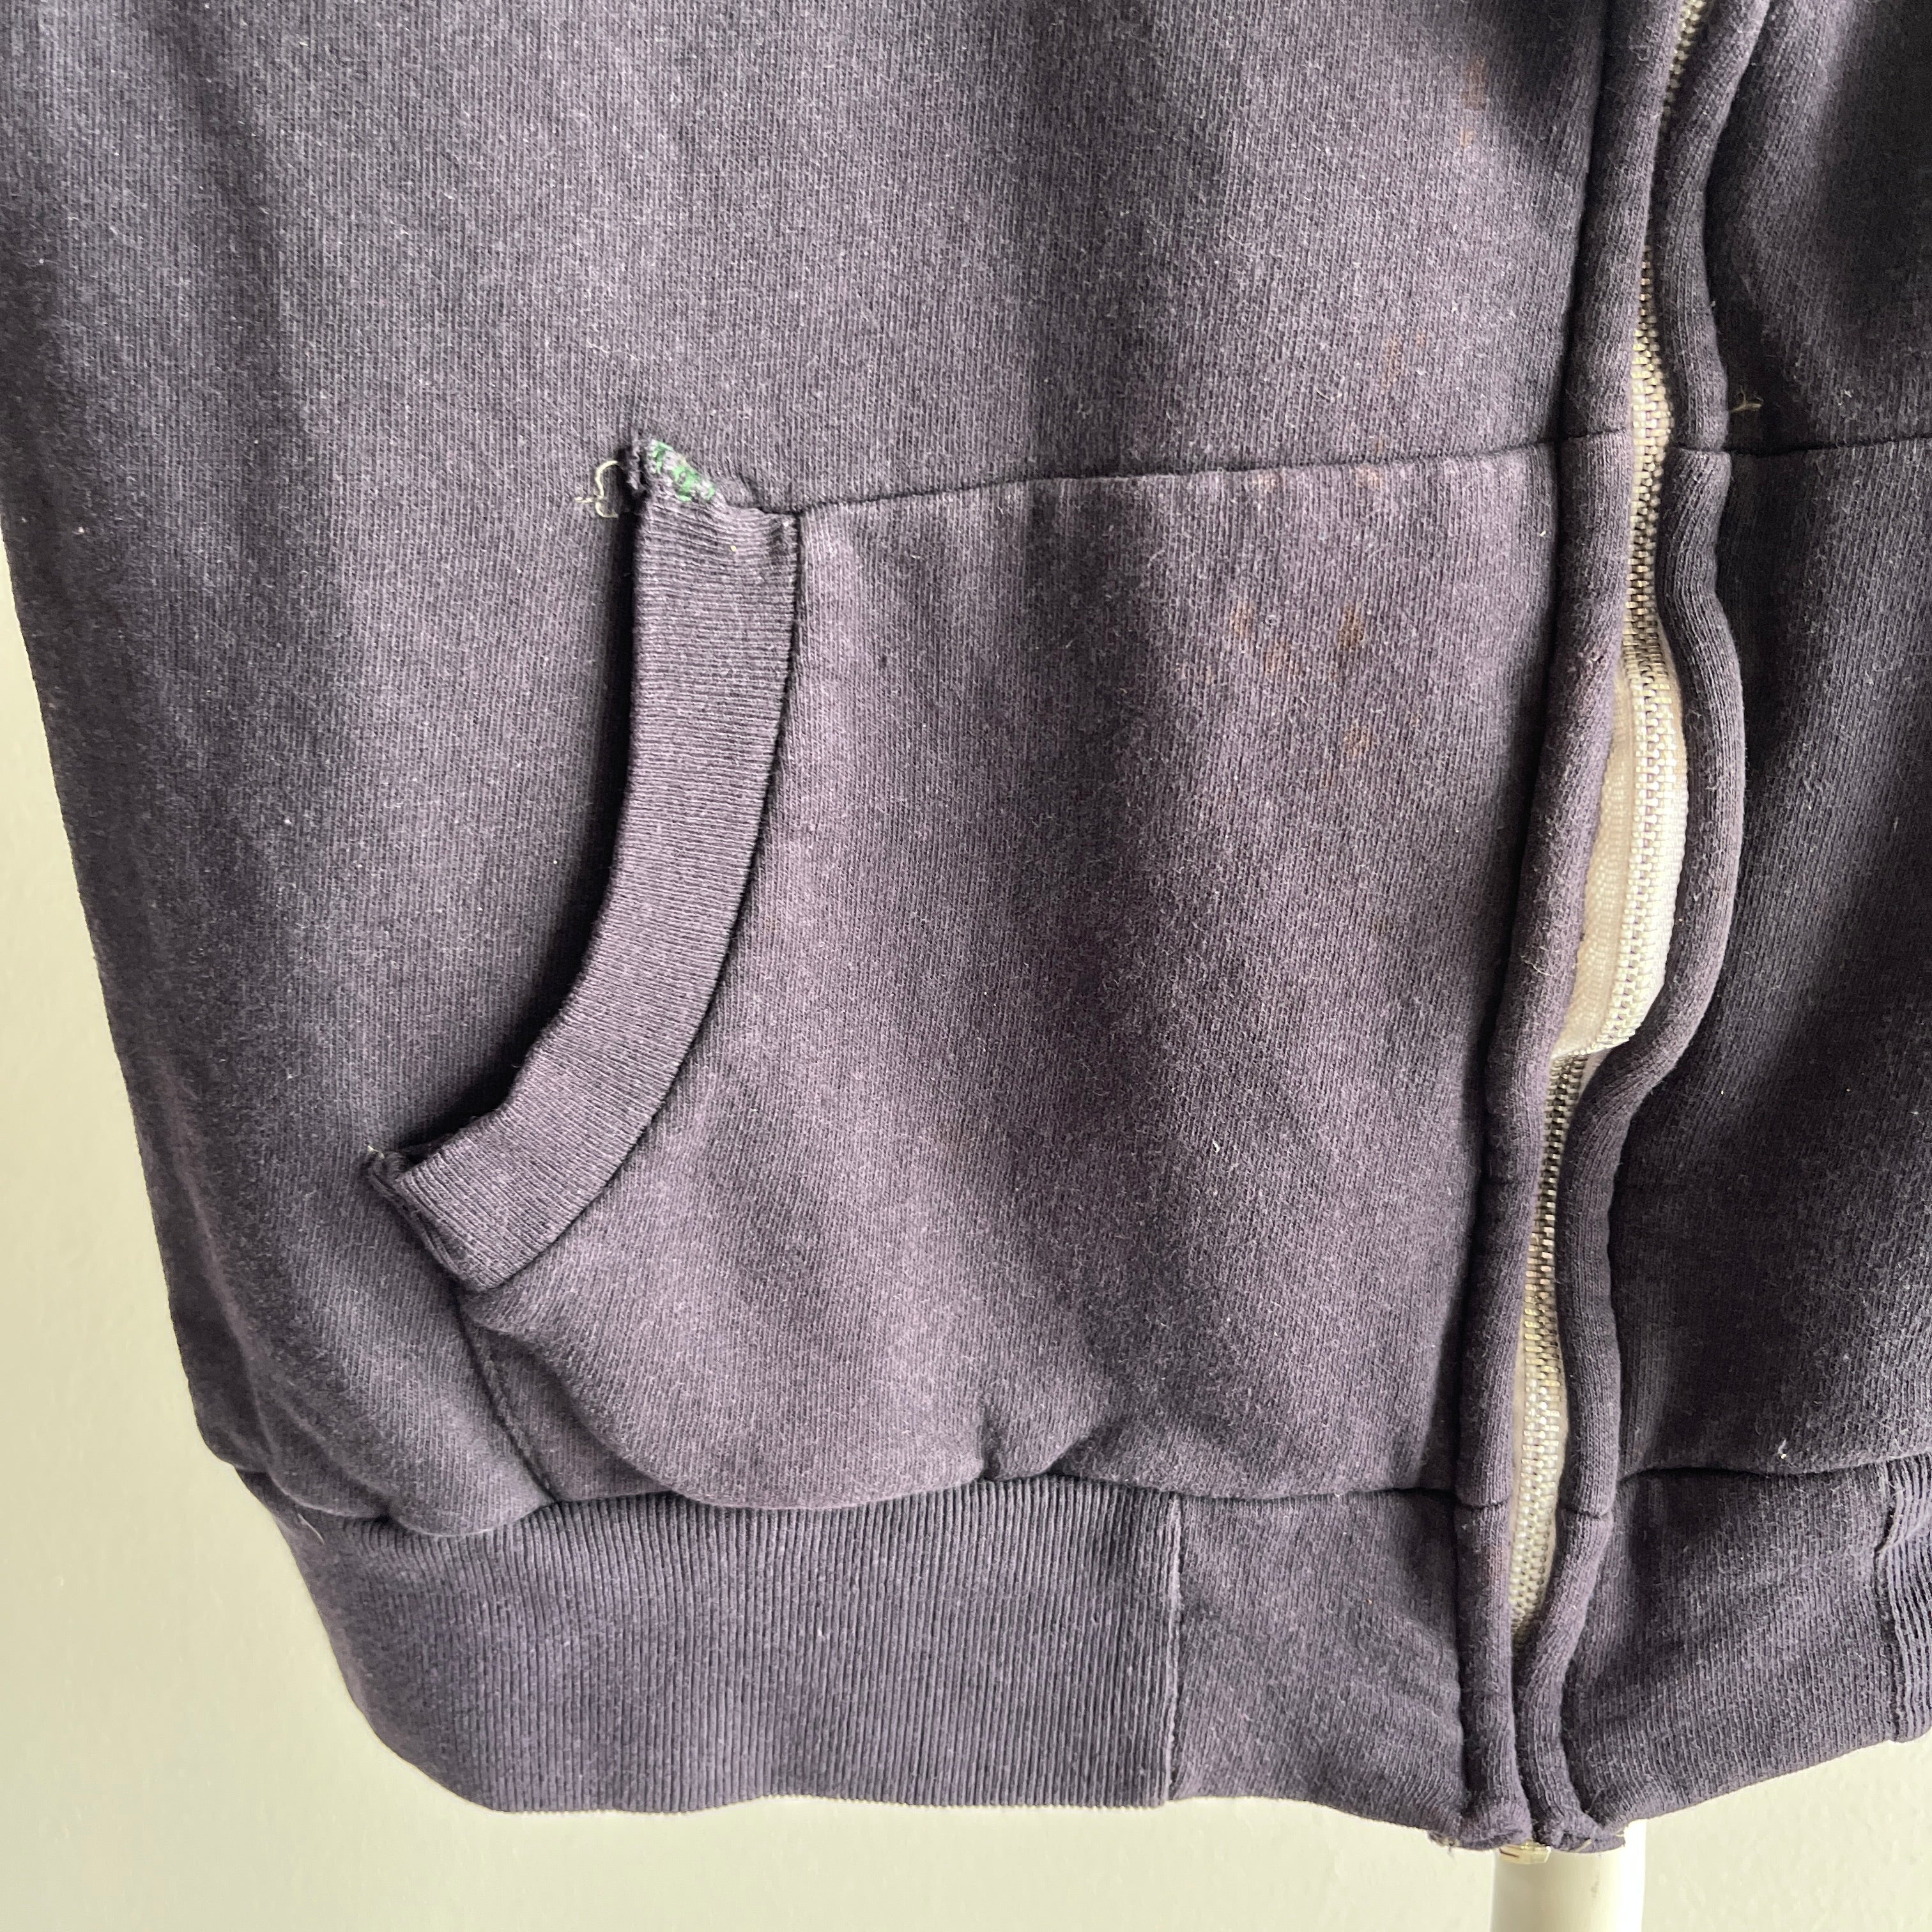 1980s Insulated Sleeveless Sweatshirt Warm Up Zip Up - THIS